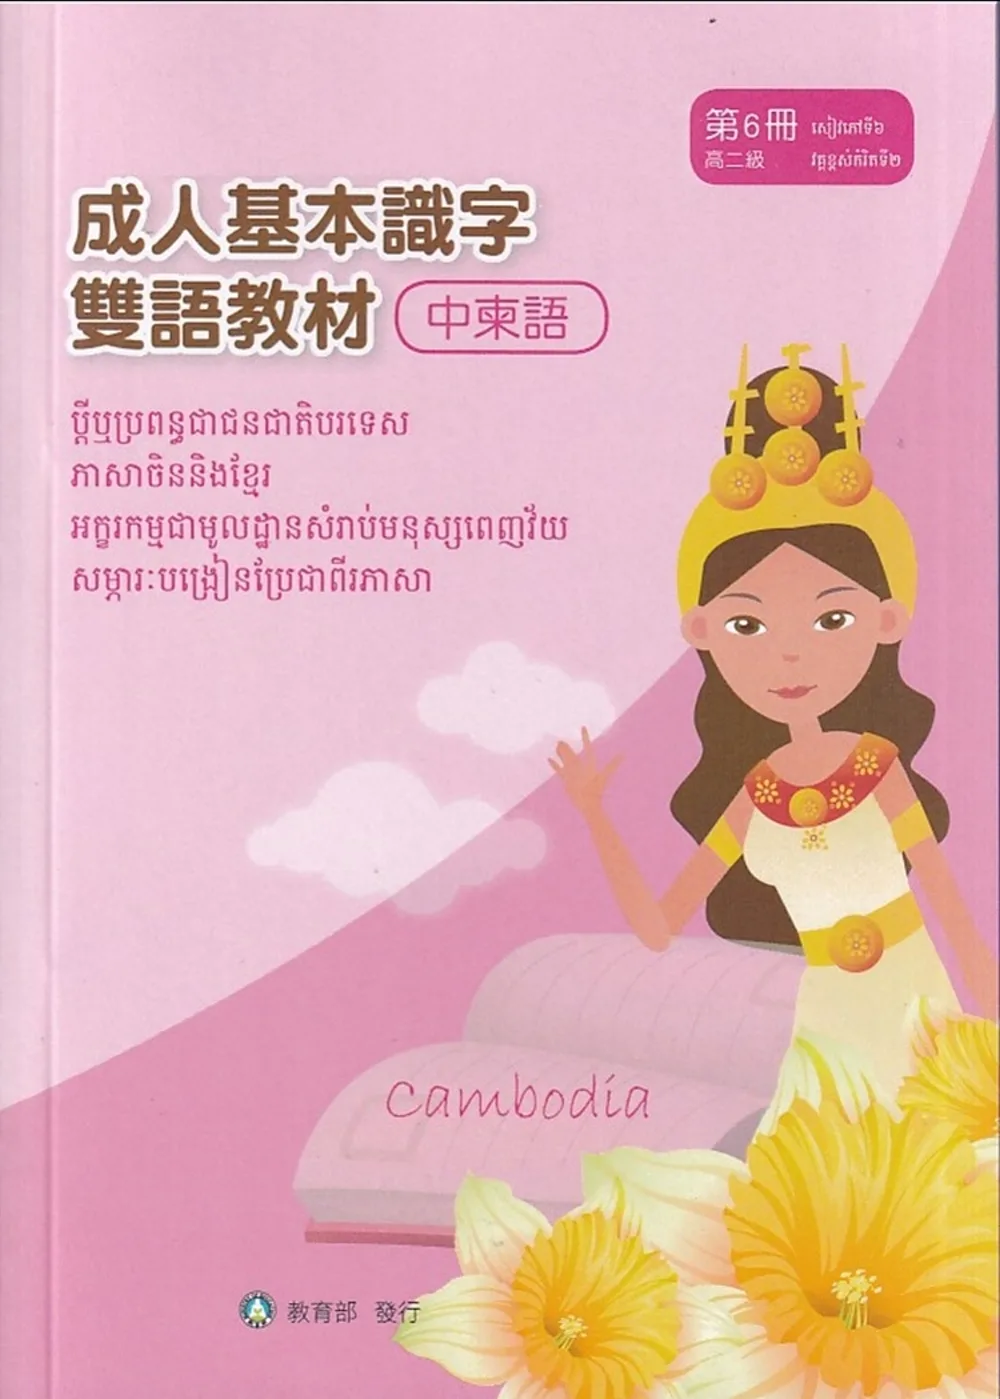 成人基本識字雙語教材(中柬語)